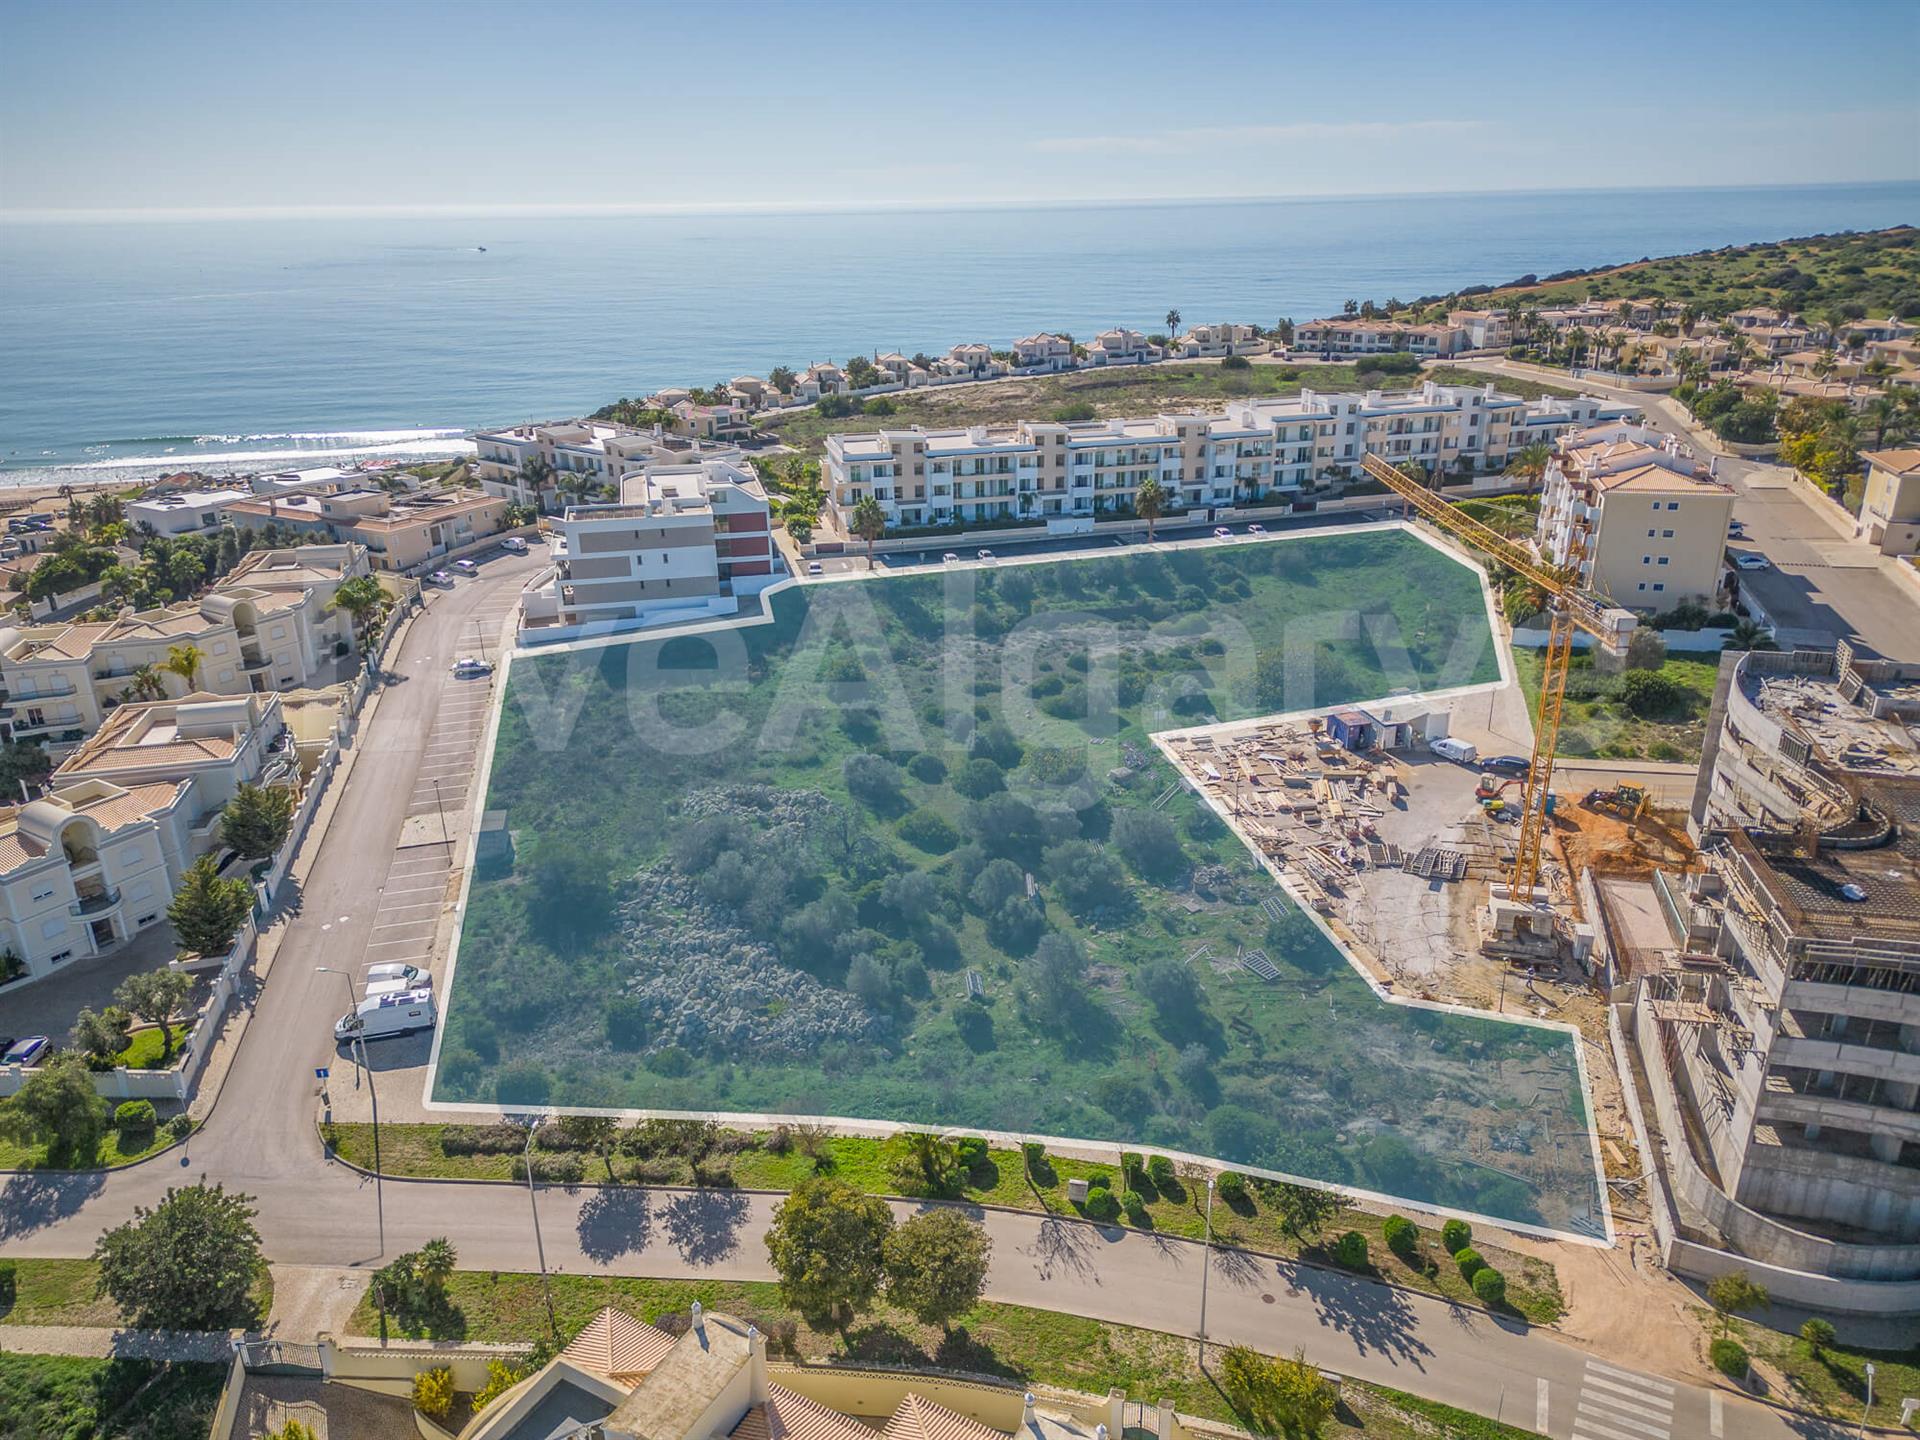 Near Beach | Ein 9.068M² Grosses Baugrundstück In Bester Lage In Porto De Mós Zum Verkauf - Lagos